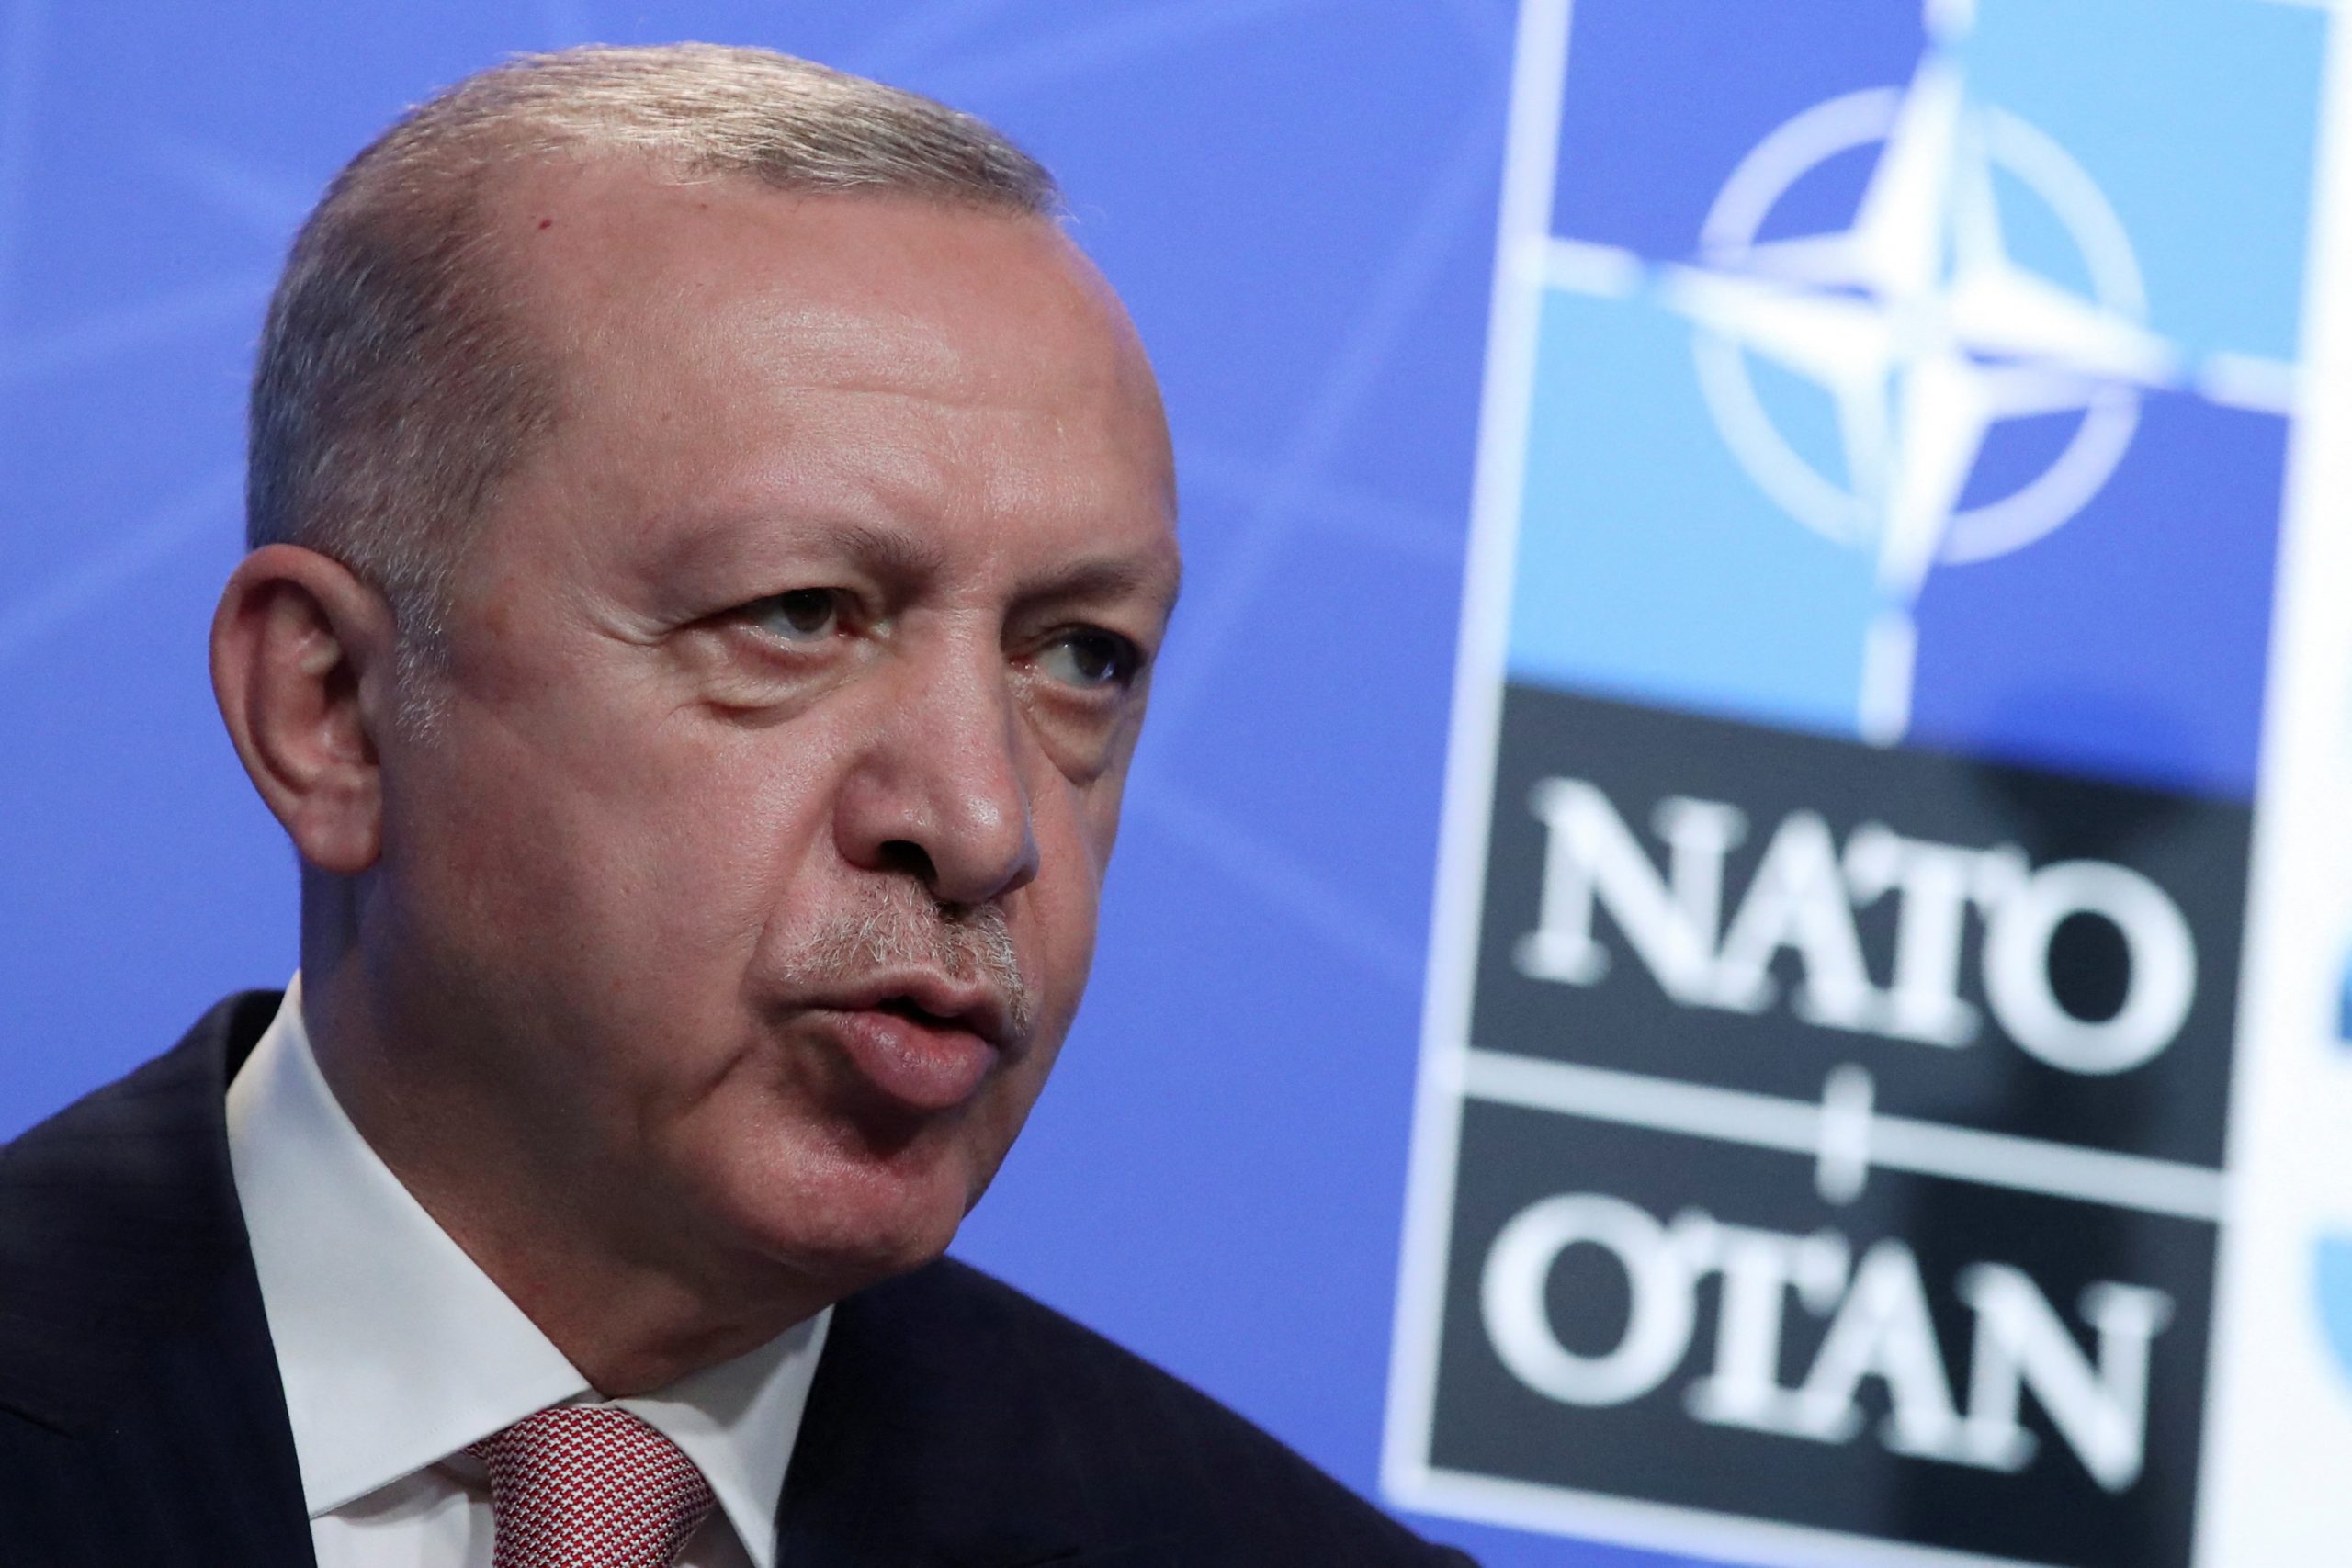 Greece has no real value in NATO: Erdogan 1